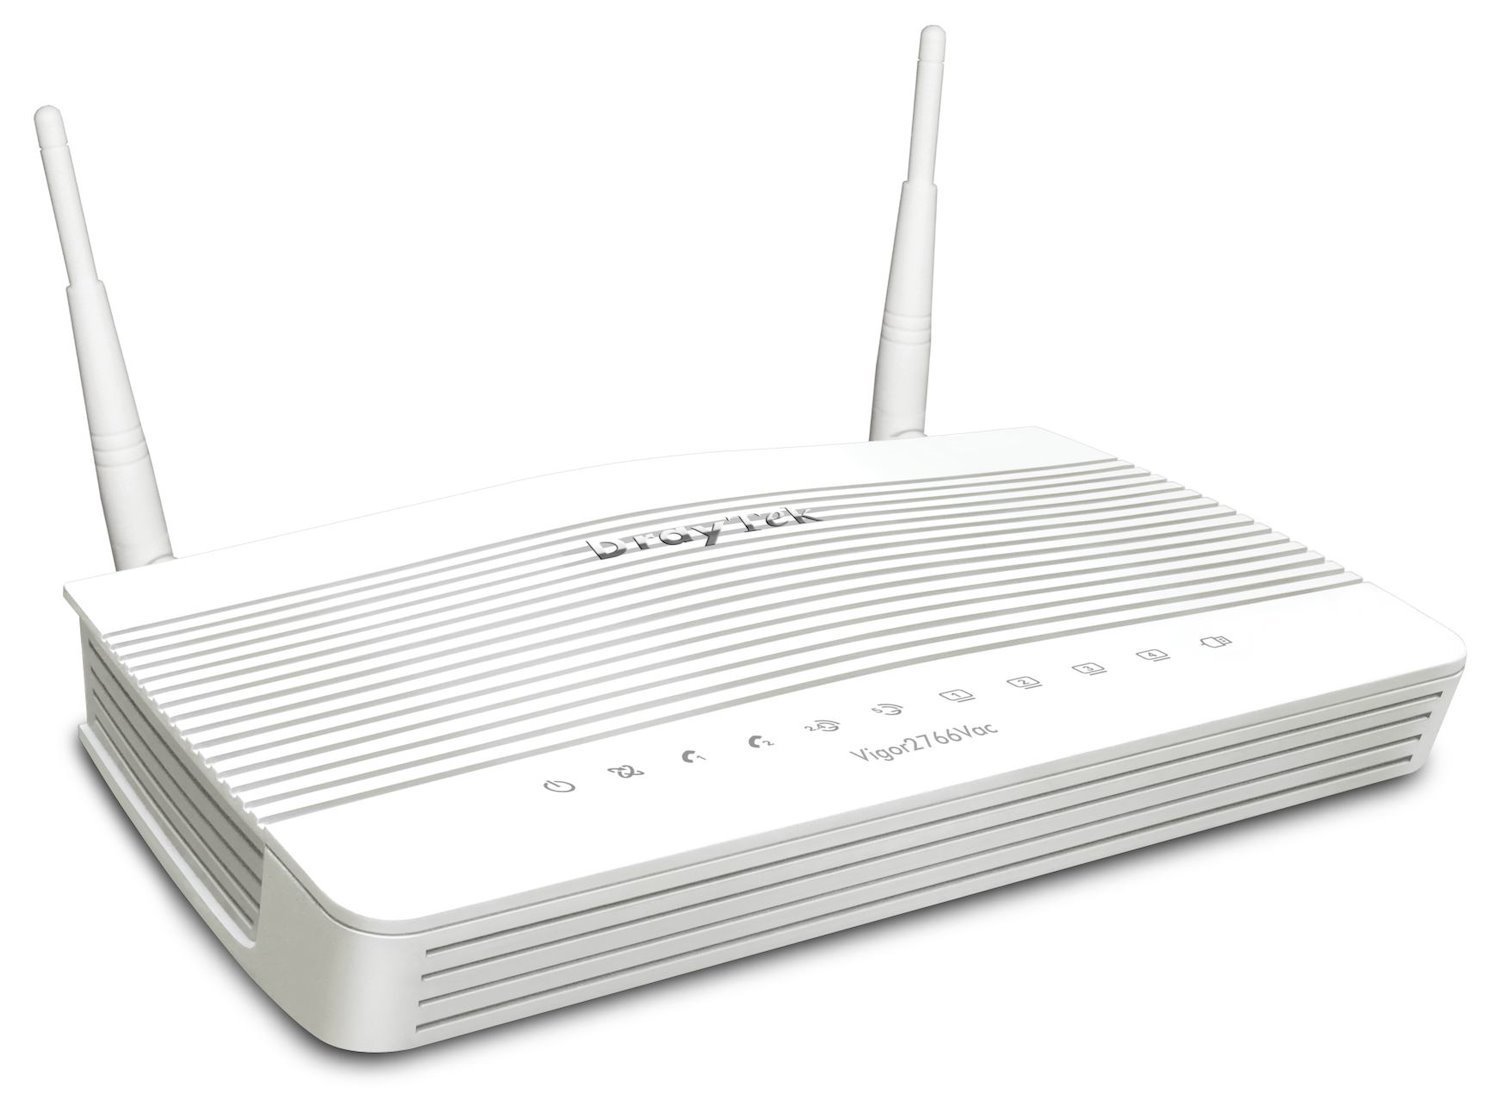 Draytek Vigor 2766Vac Wireless Router Gigabit Ethernet Dual-Band [2.4 GHz / 5 GHz] White (DrayTek Vigor 2766Vac VDSL VoIP Router)